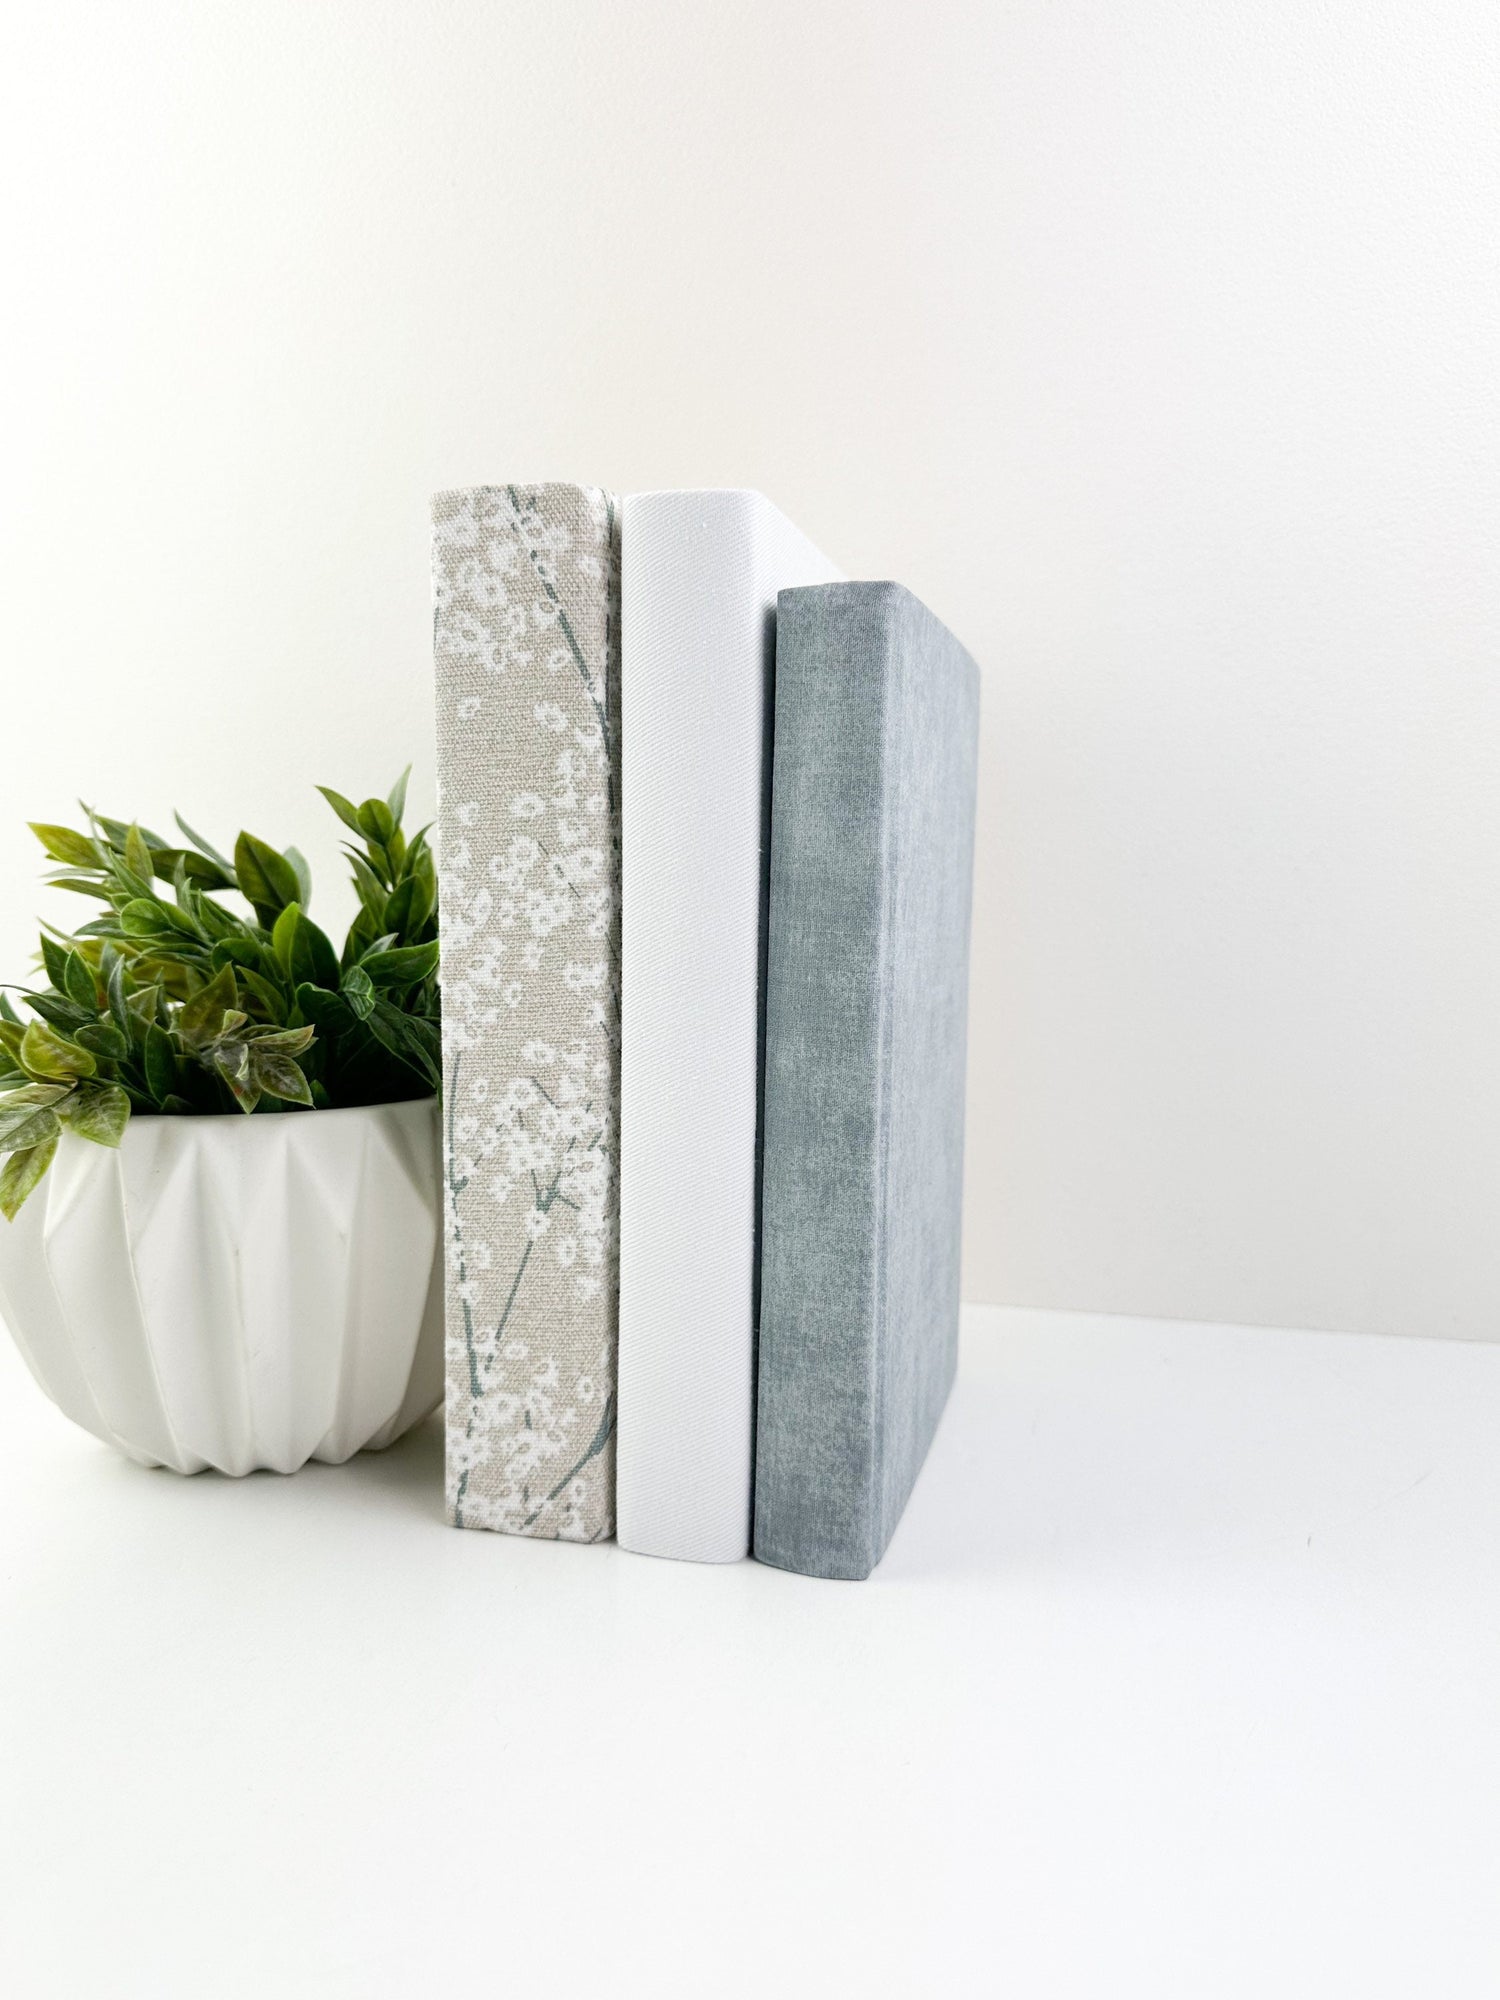 Gray Decorative Books for Shelf Decor